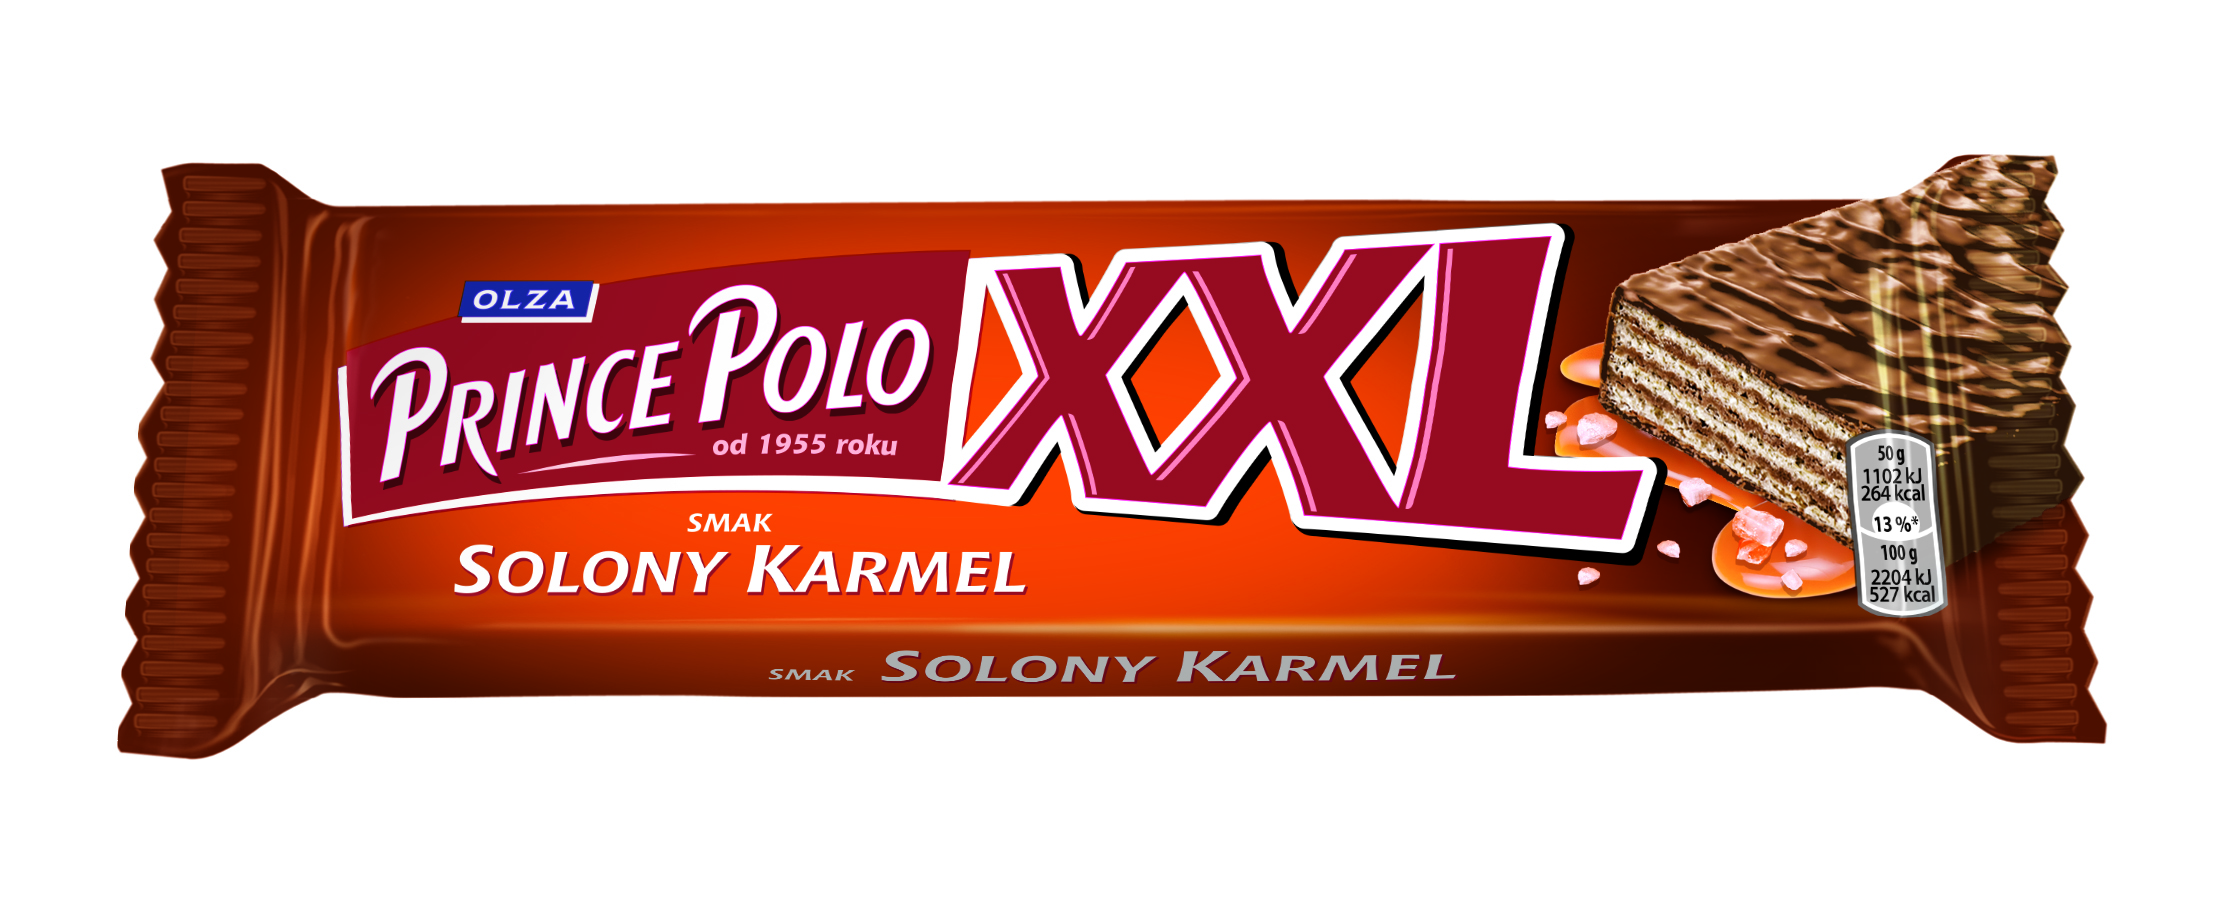 Prince Polo XXL słony karmel kruchy wafelek